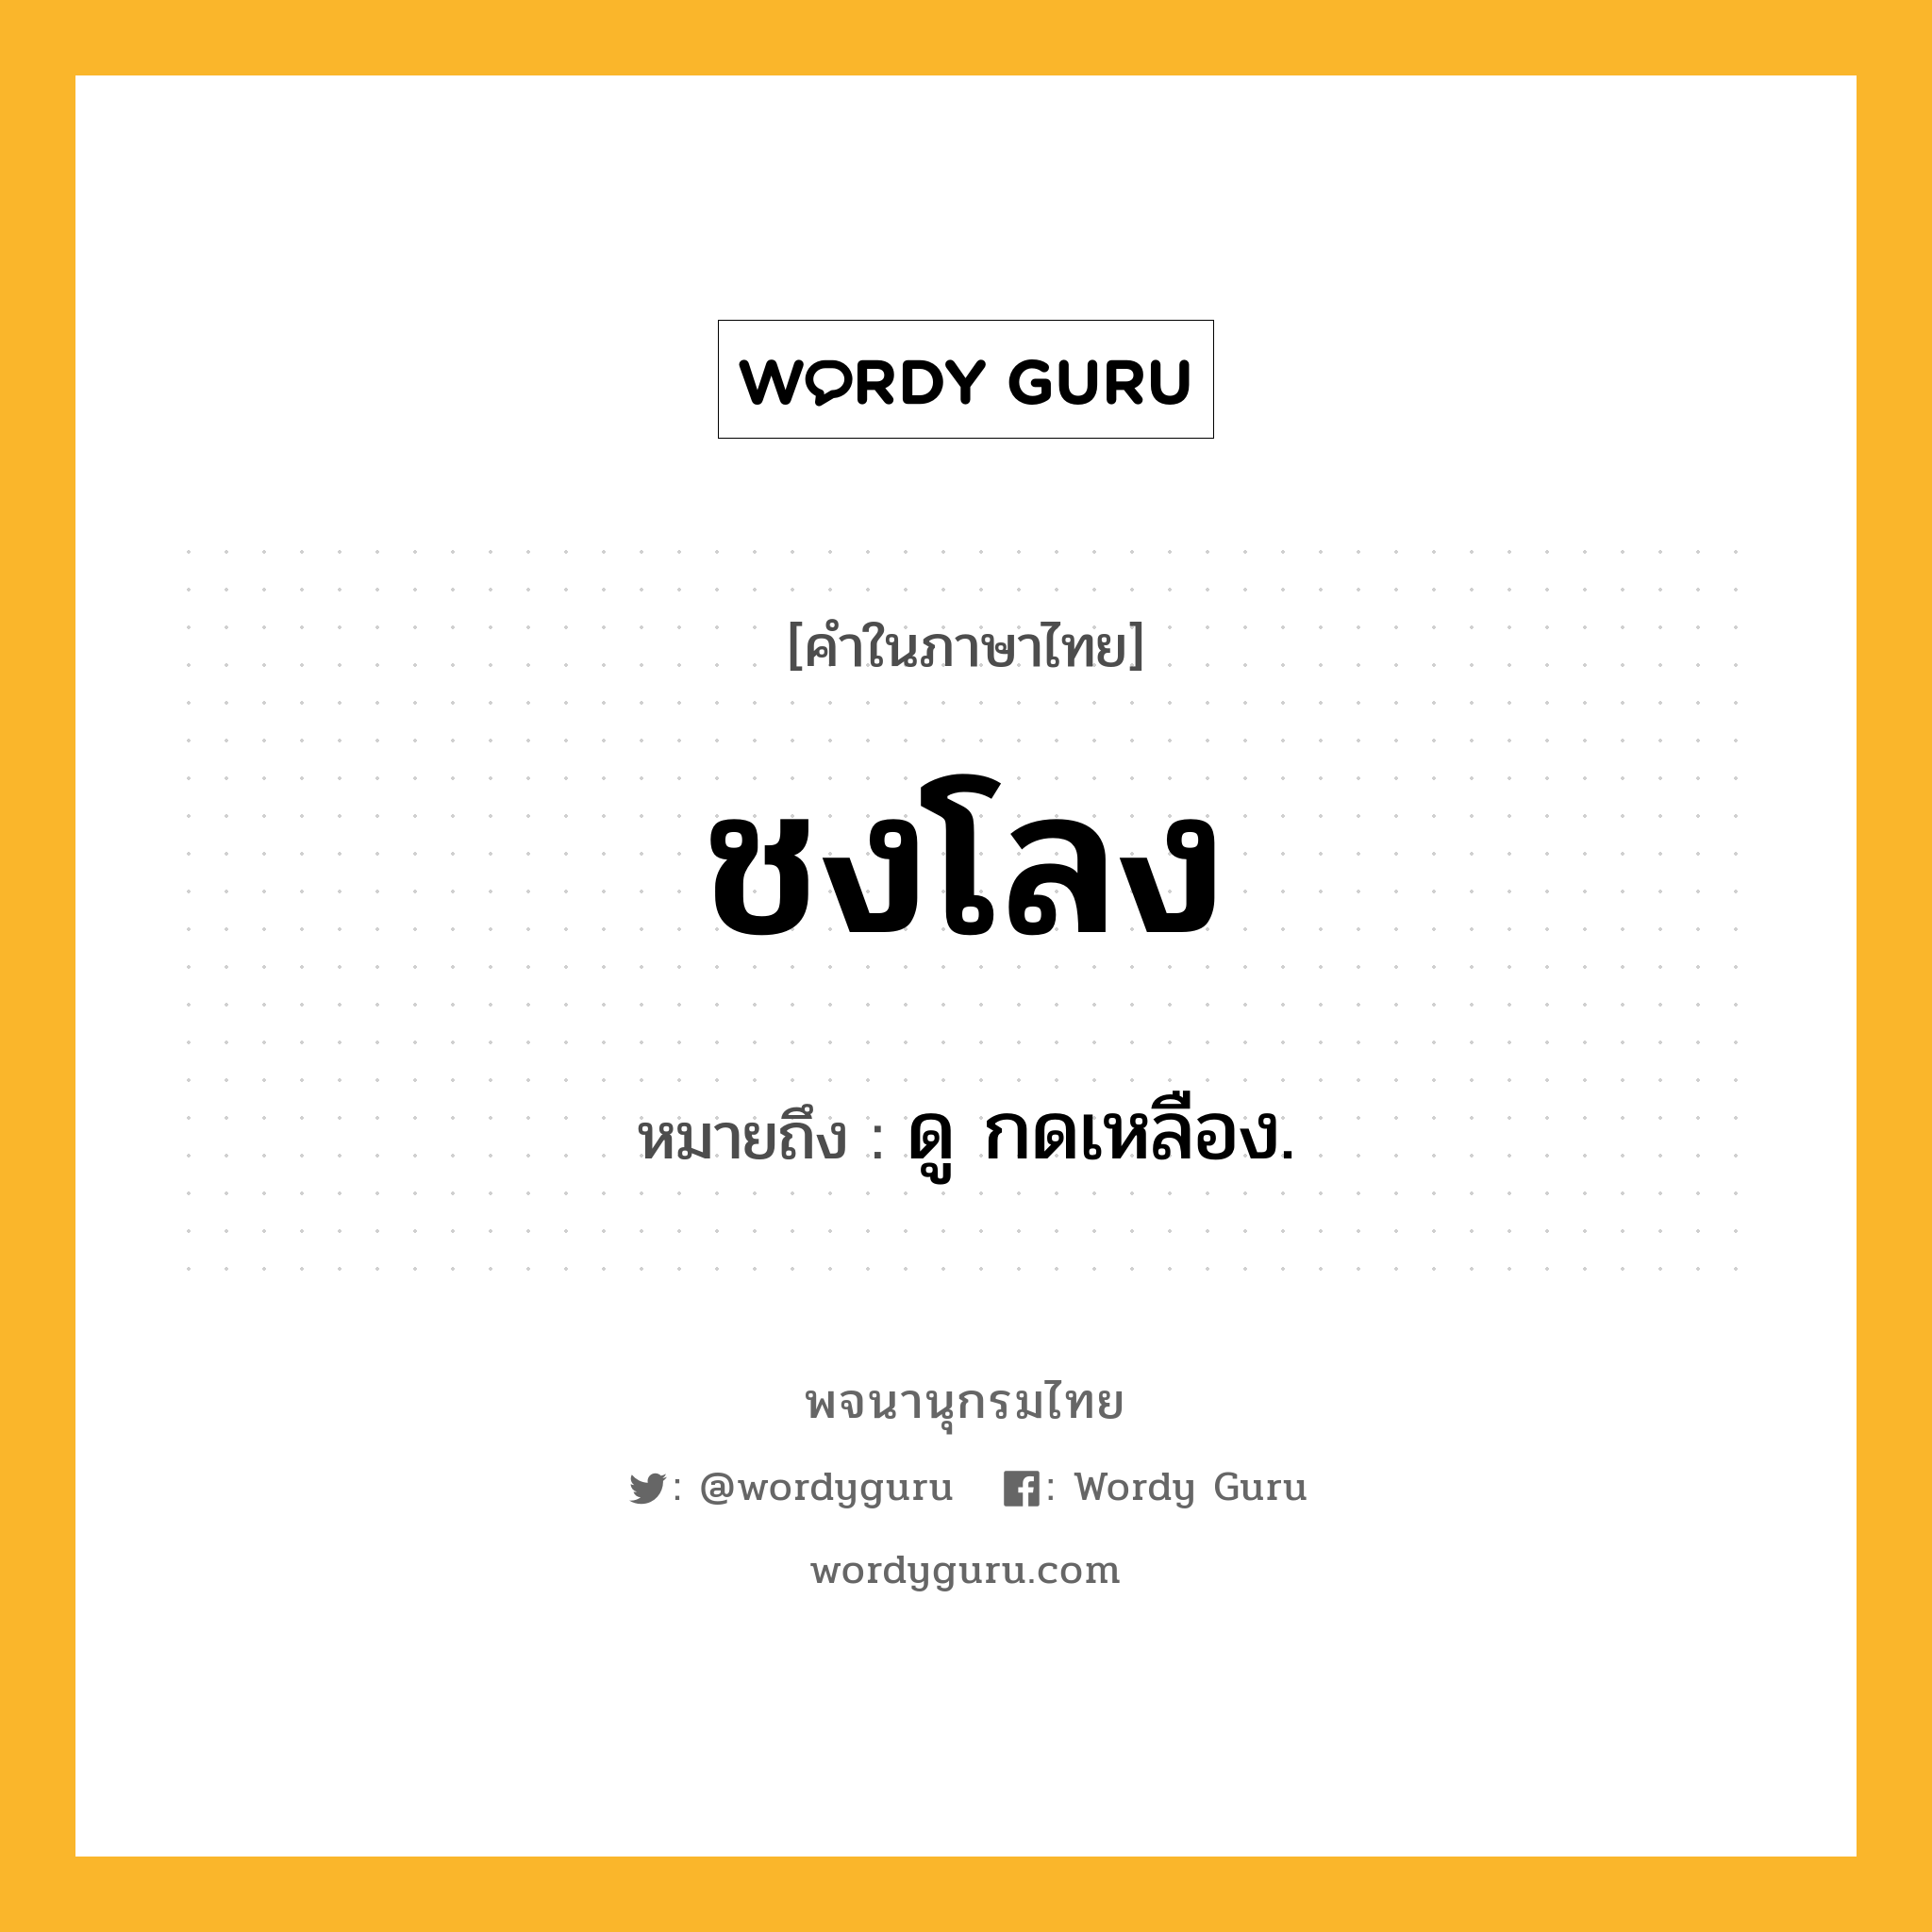 ชงโลง ความหมาย หมายถึงอะไร?, คำในภาษาไทย ชงโลง หมายถึง ดู กดเหลือง.